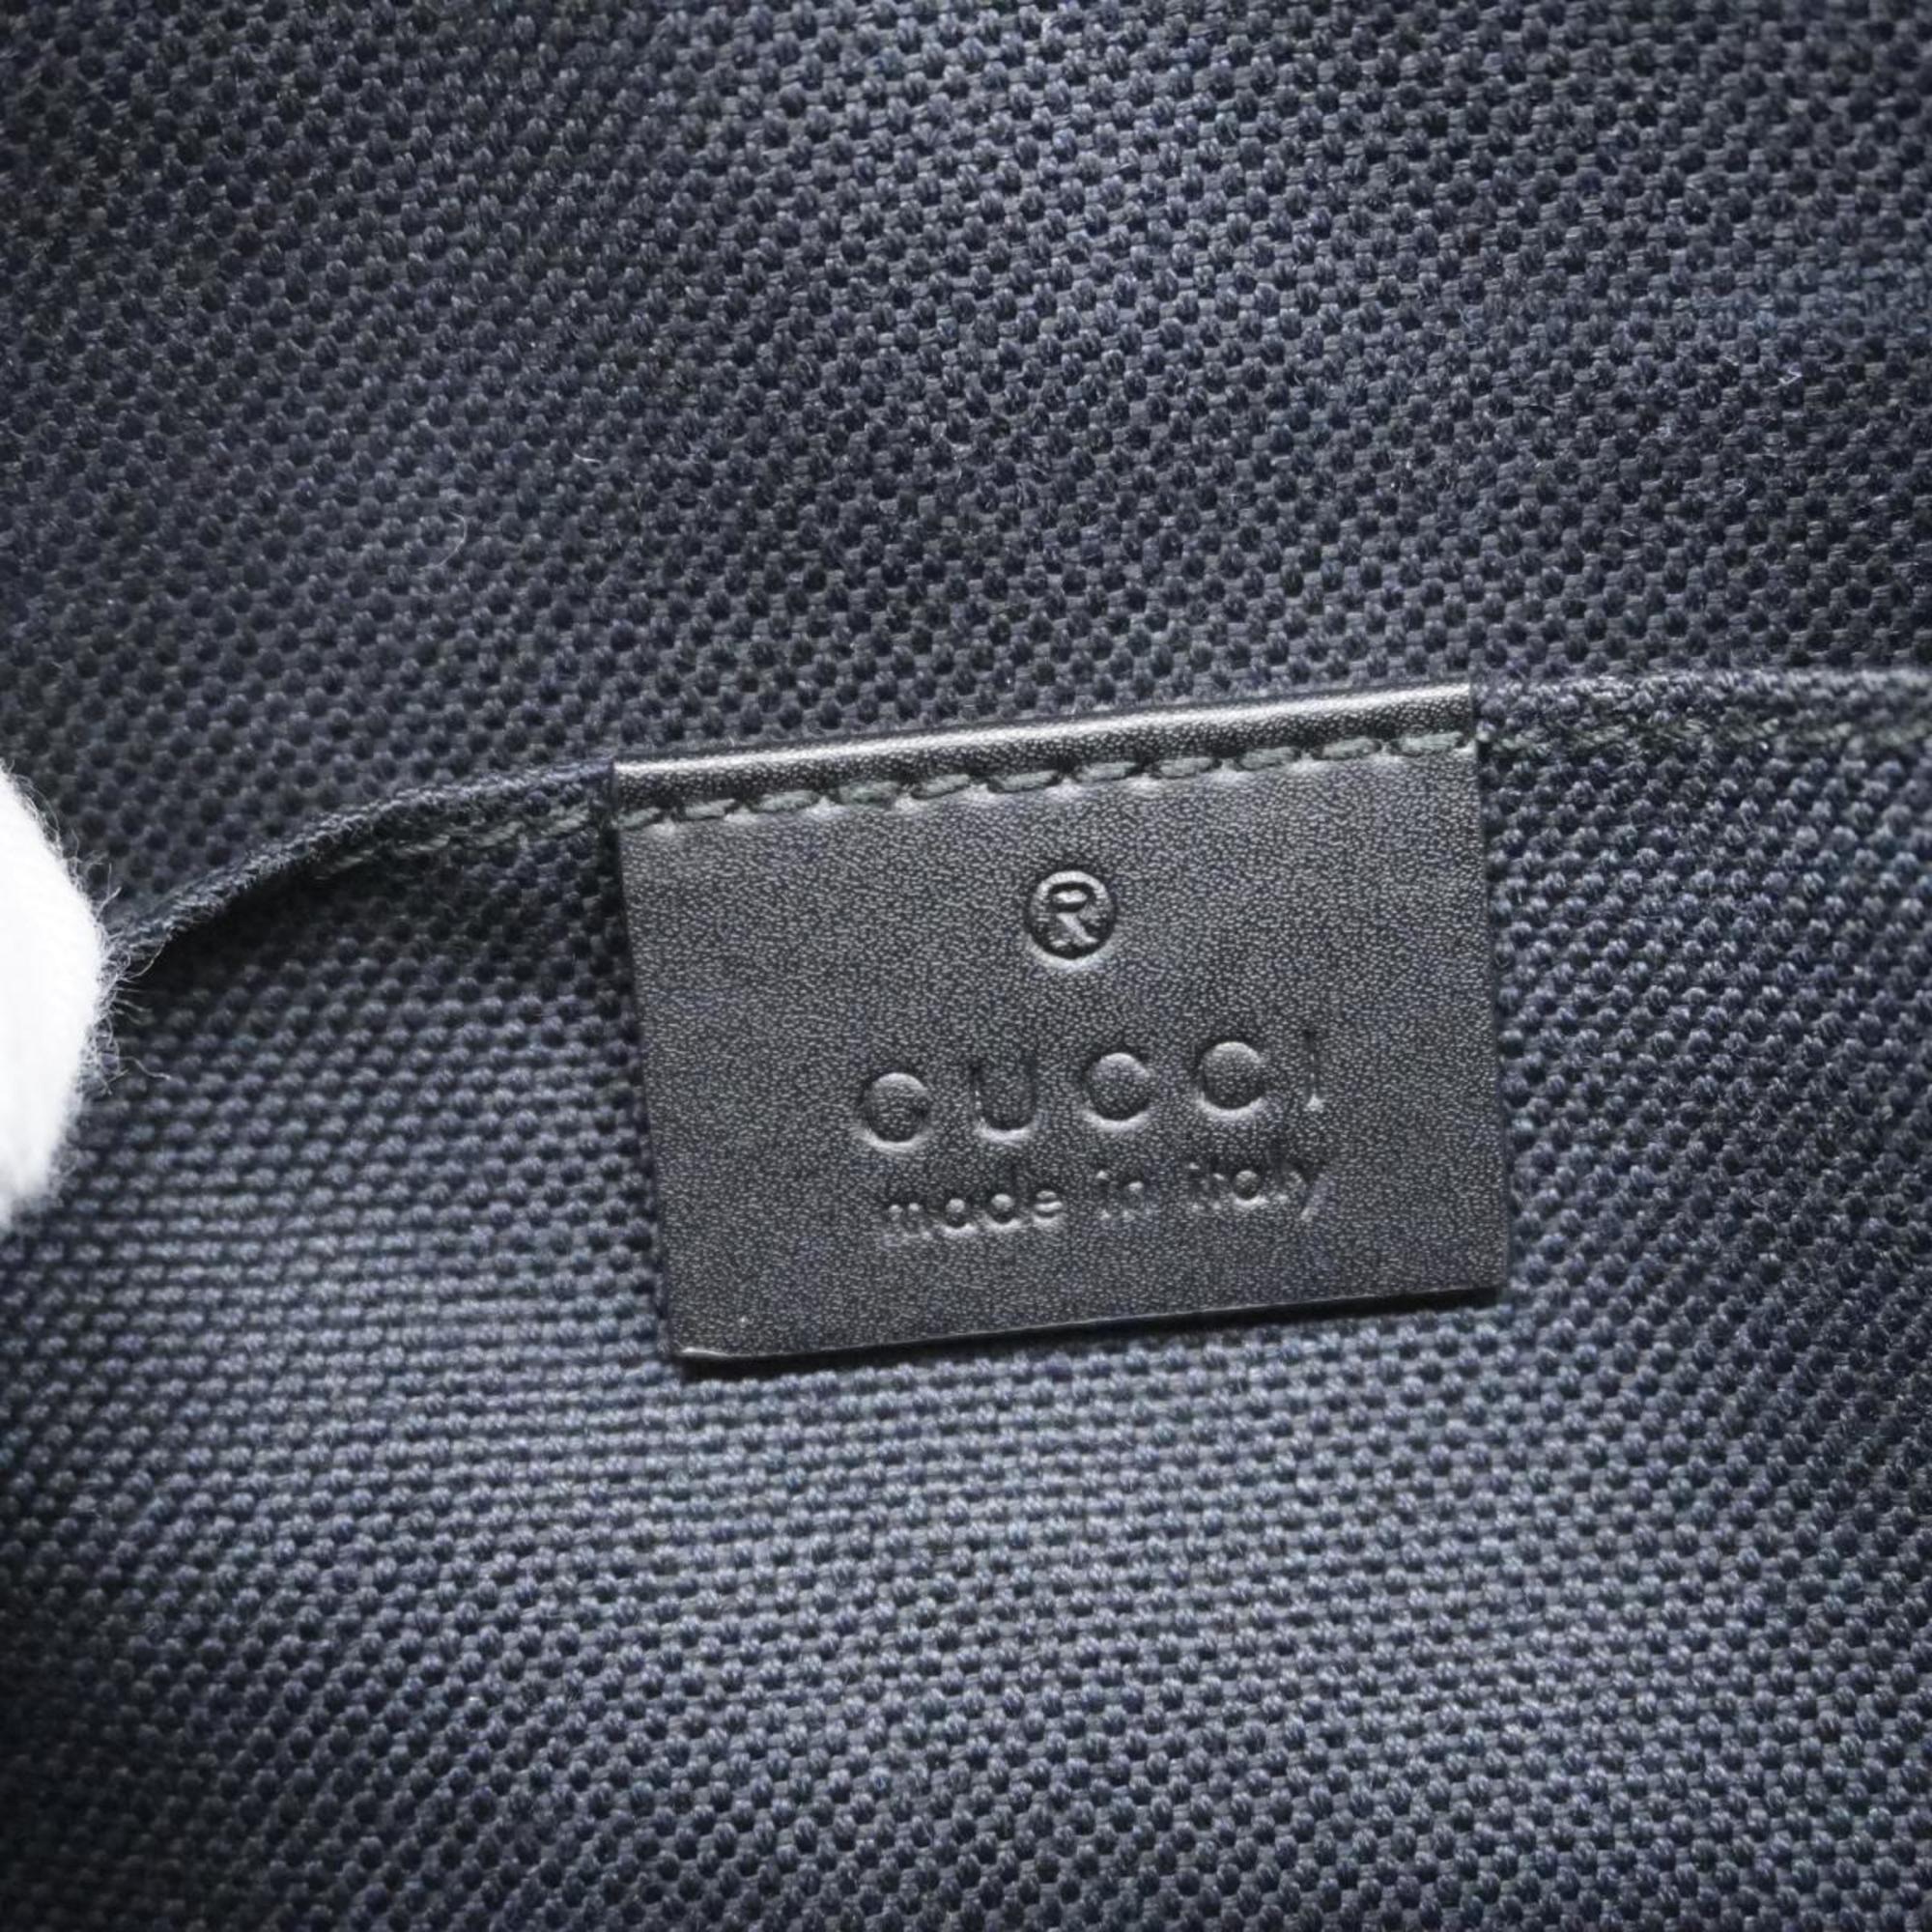 Gucci Shoulder Bag GG Supreme Sherry Line 523599 Grey Black Men's